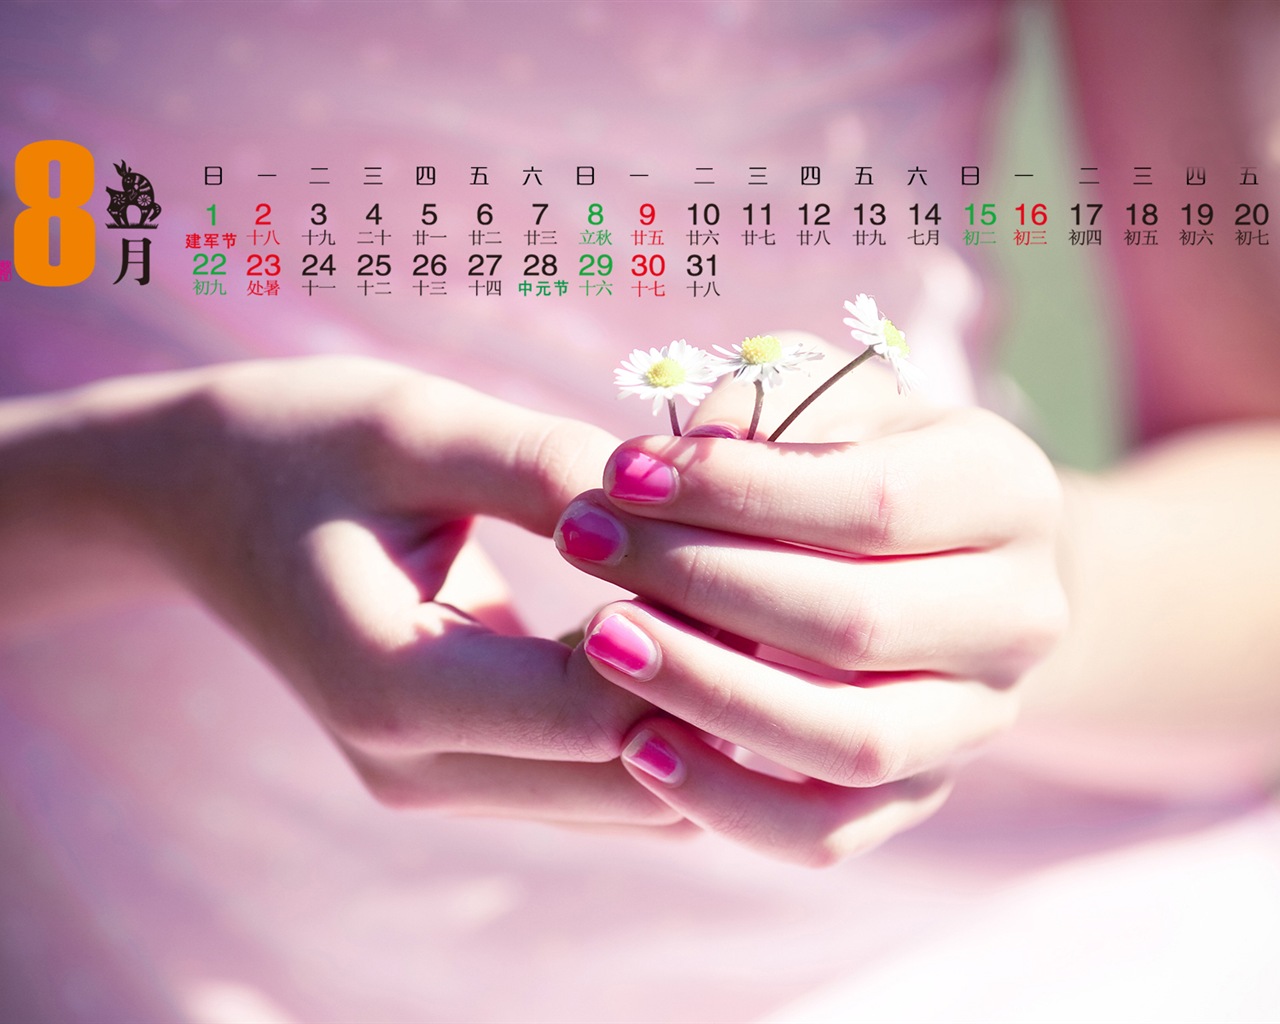 Calendar 2015 HD wallpapers #5 - 1280x1024